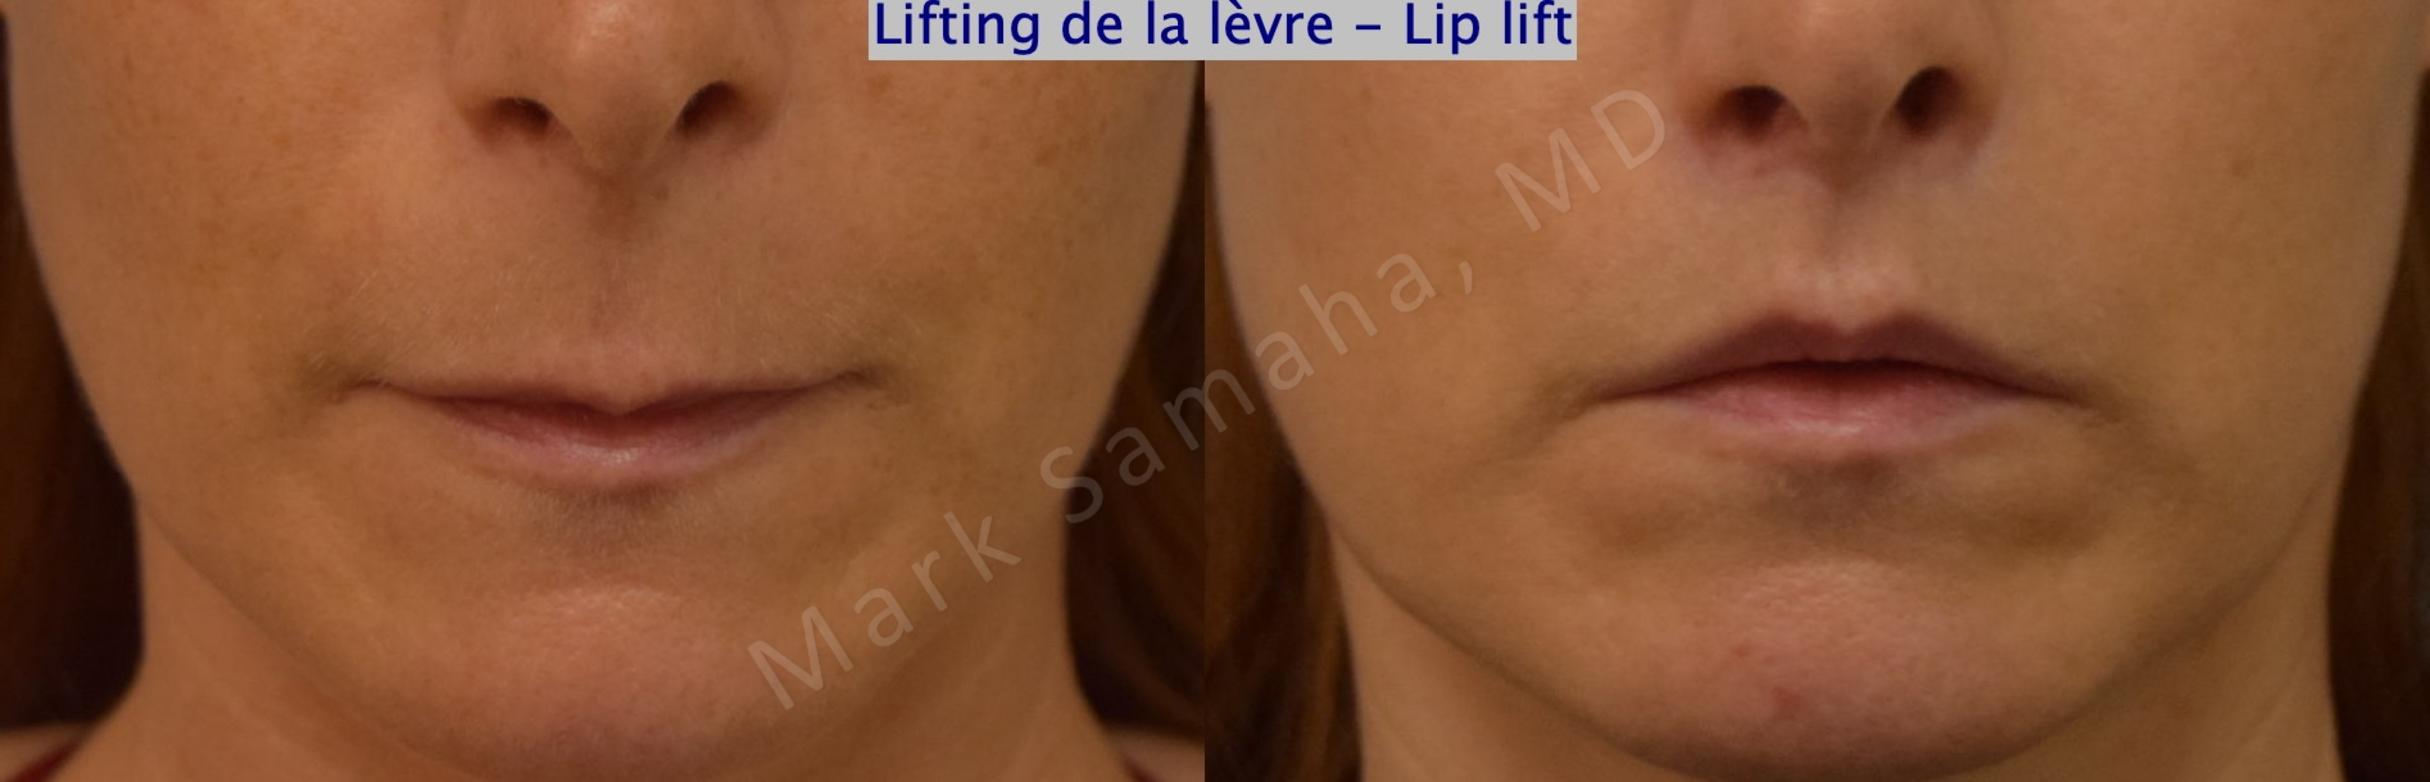 Before & After Lip Lift / Lifting de la lèvre supérieure Case 197 Front View in Mount Royal, QC